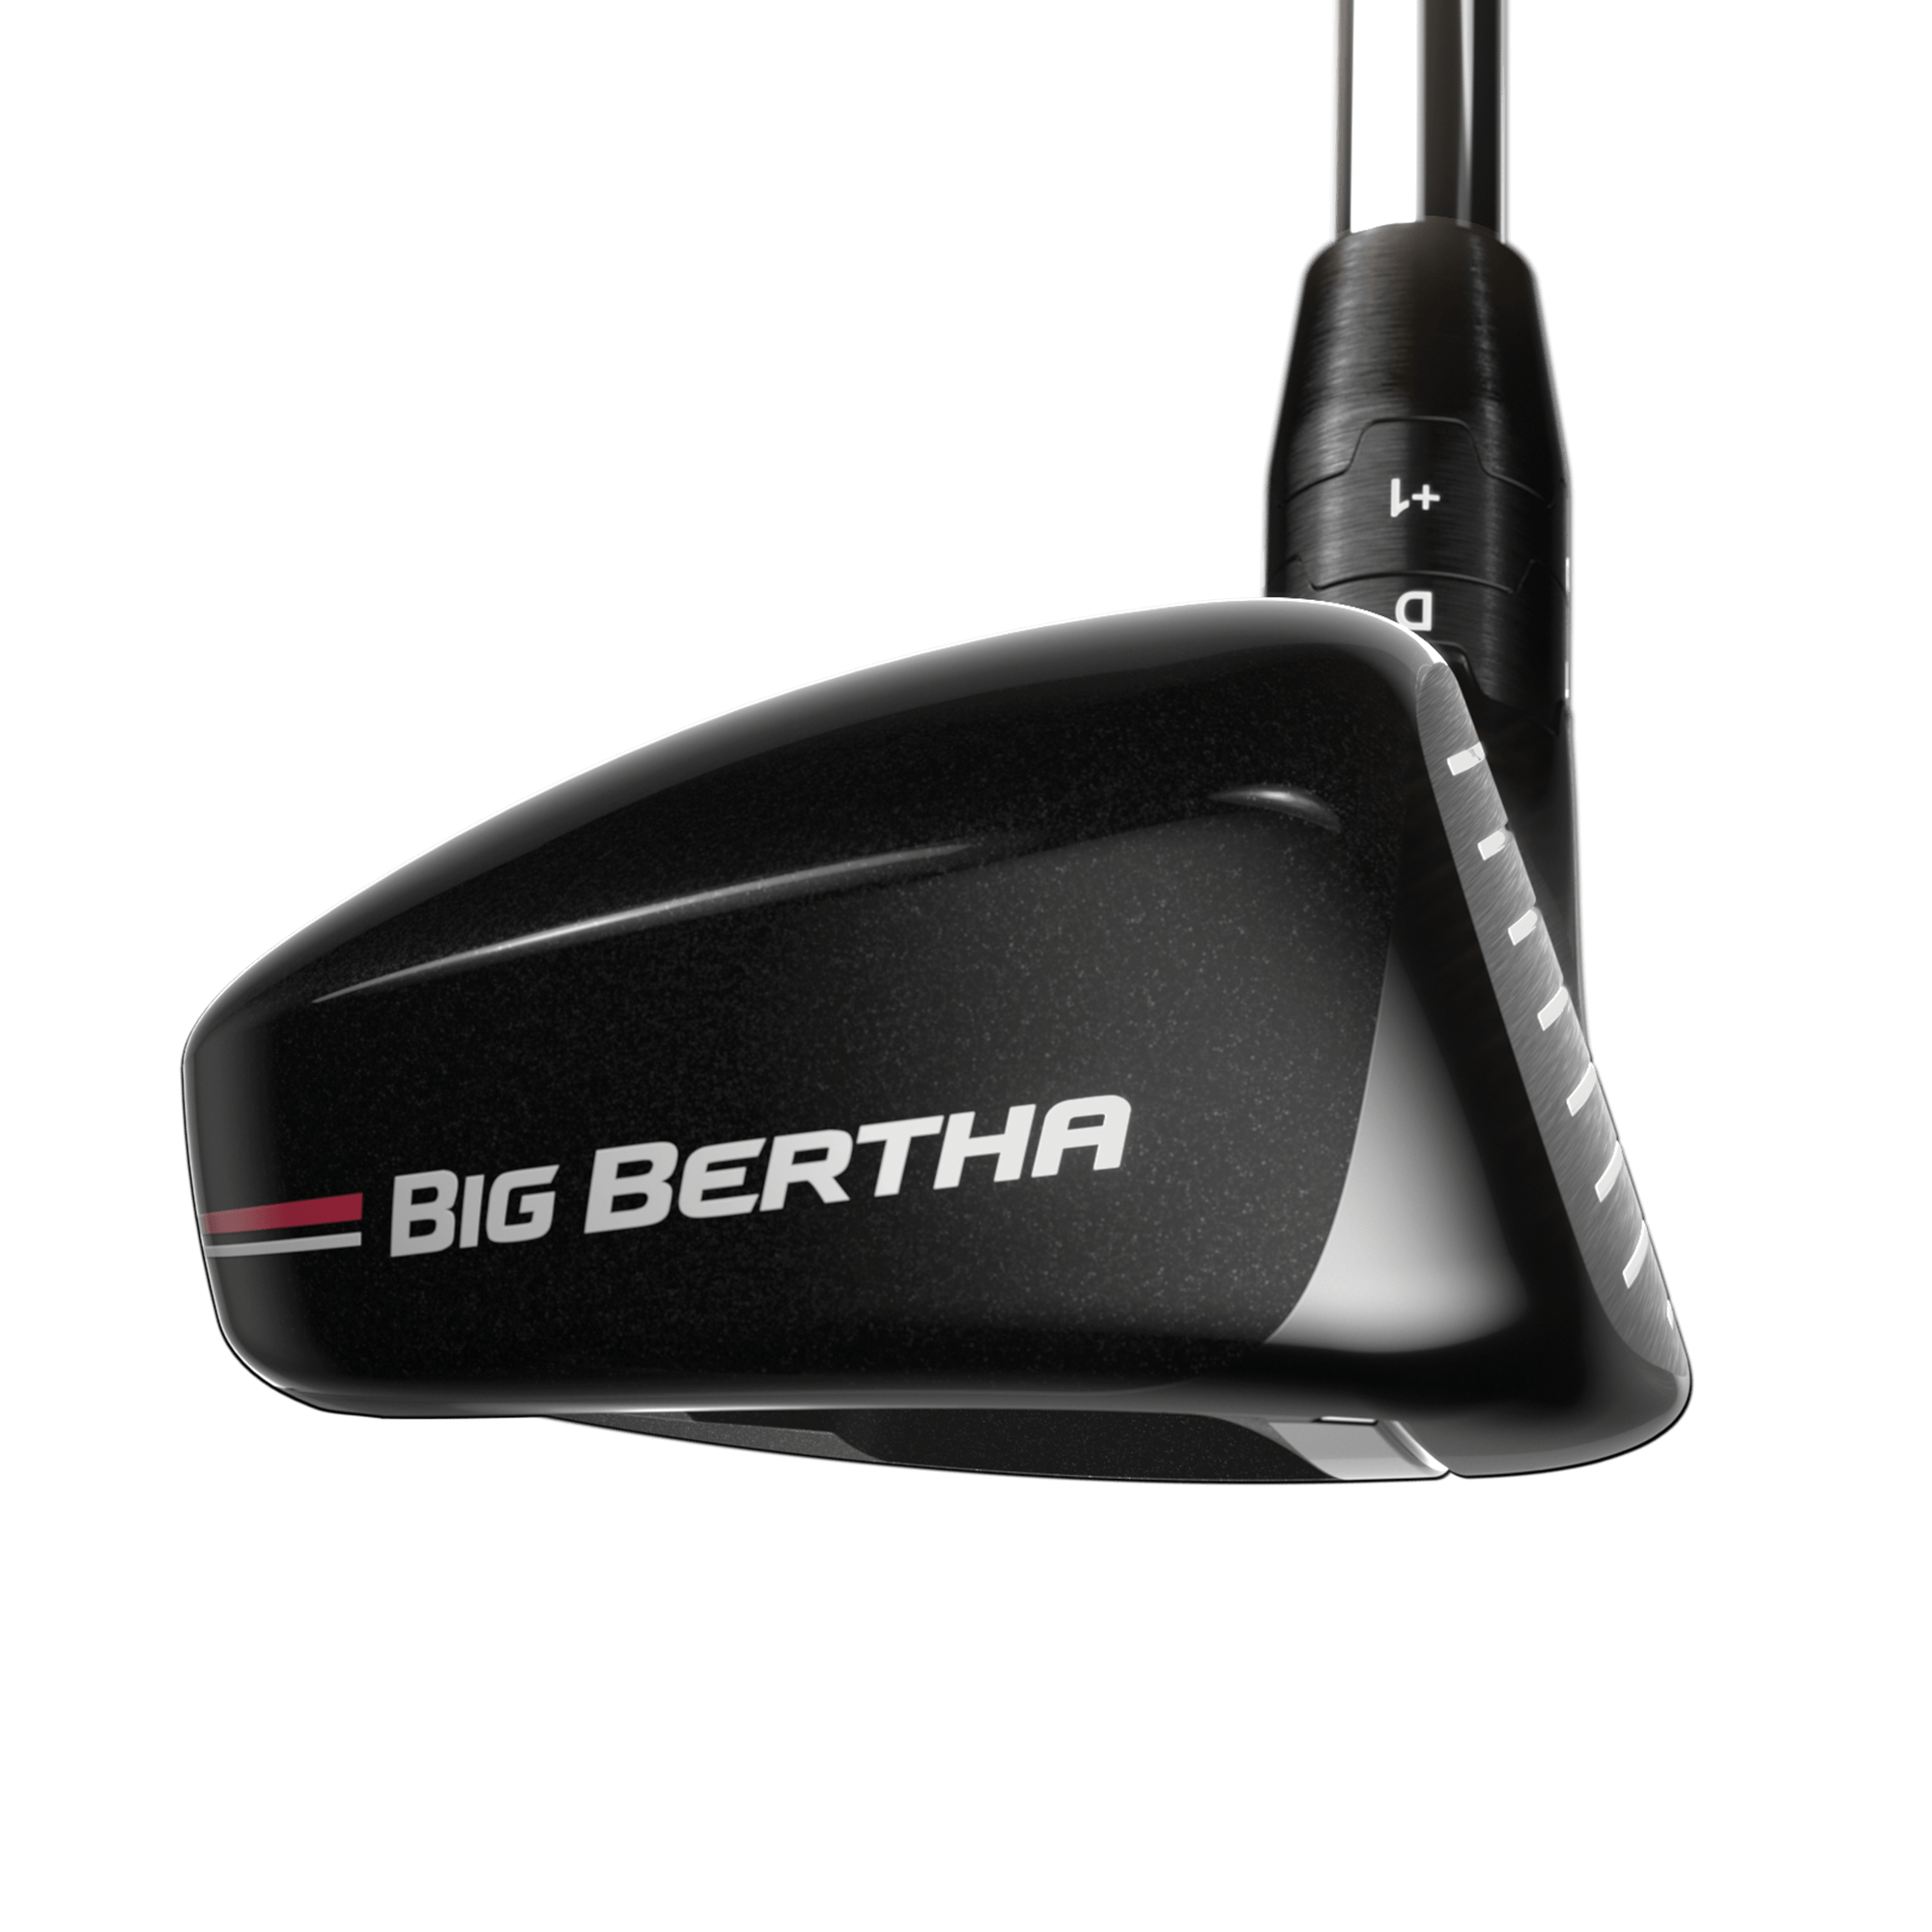 Big Bertha Hybrid Golf Clubs | Callaway Golf